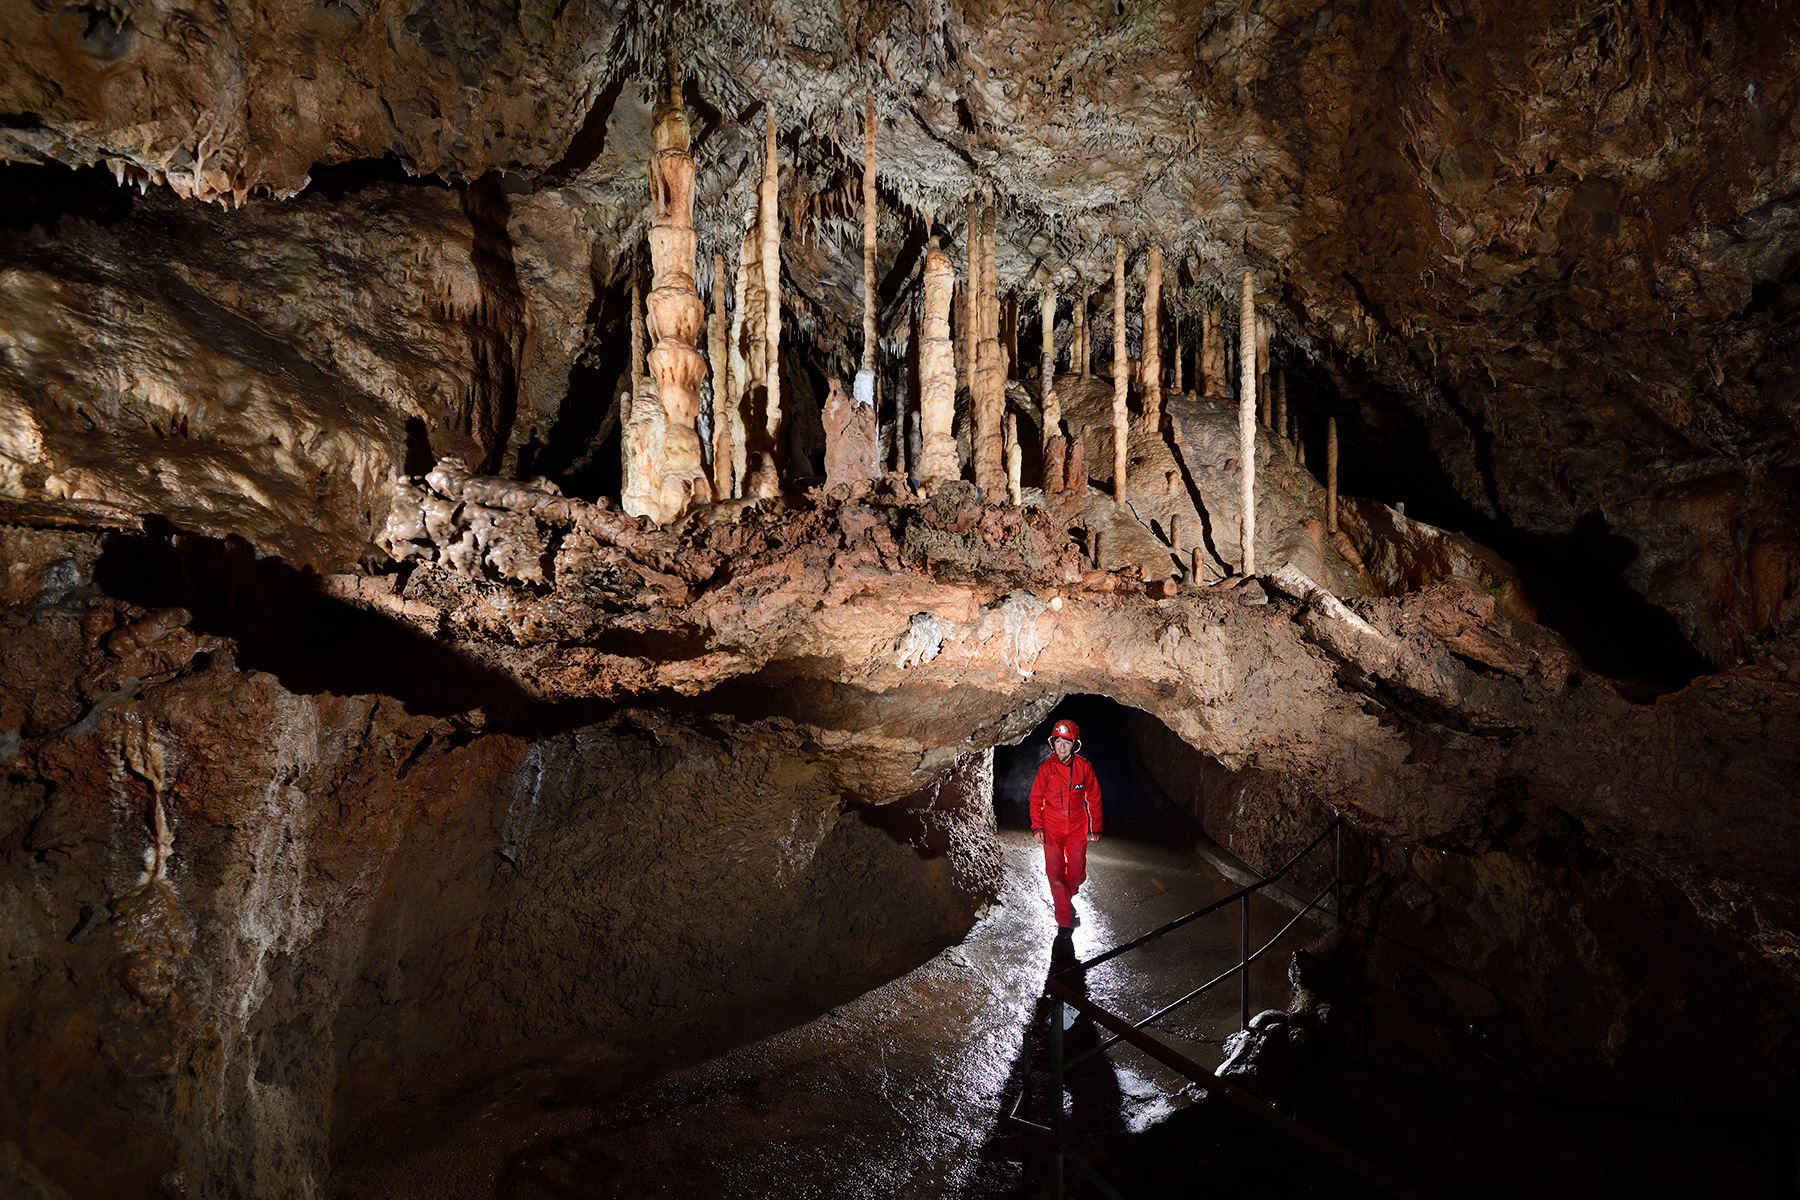 Grotte de Han (partie touristique) - Galerie des Vervietois : forêt de "cierges" sur un plancher stalagmitique qui avait recouvert un ancien remplissage, par la suite creusé pour le passage des touristes